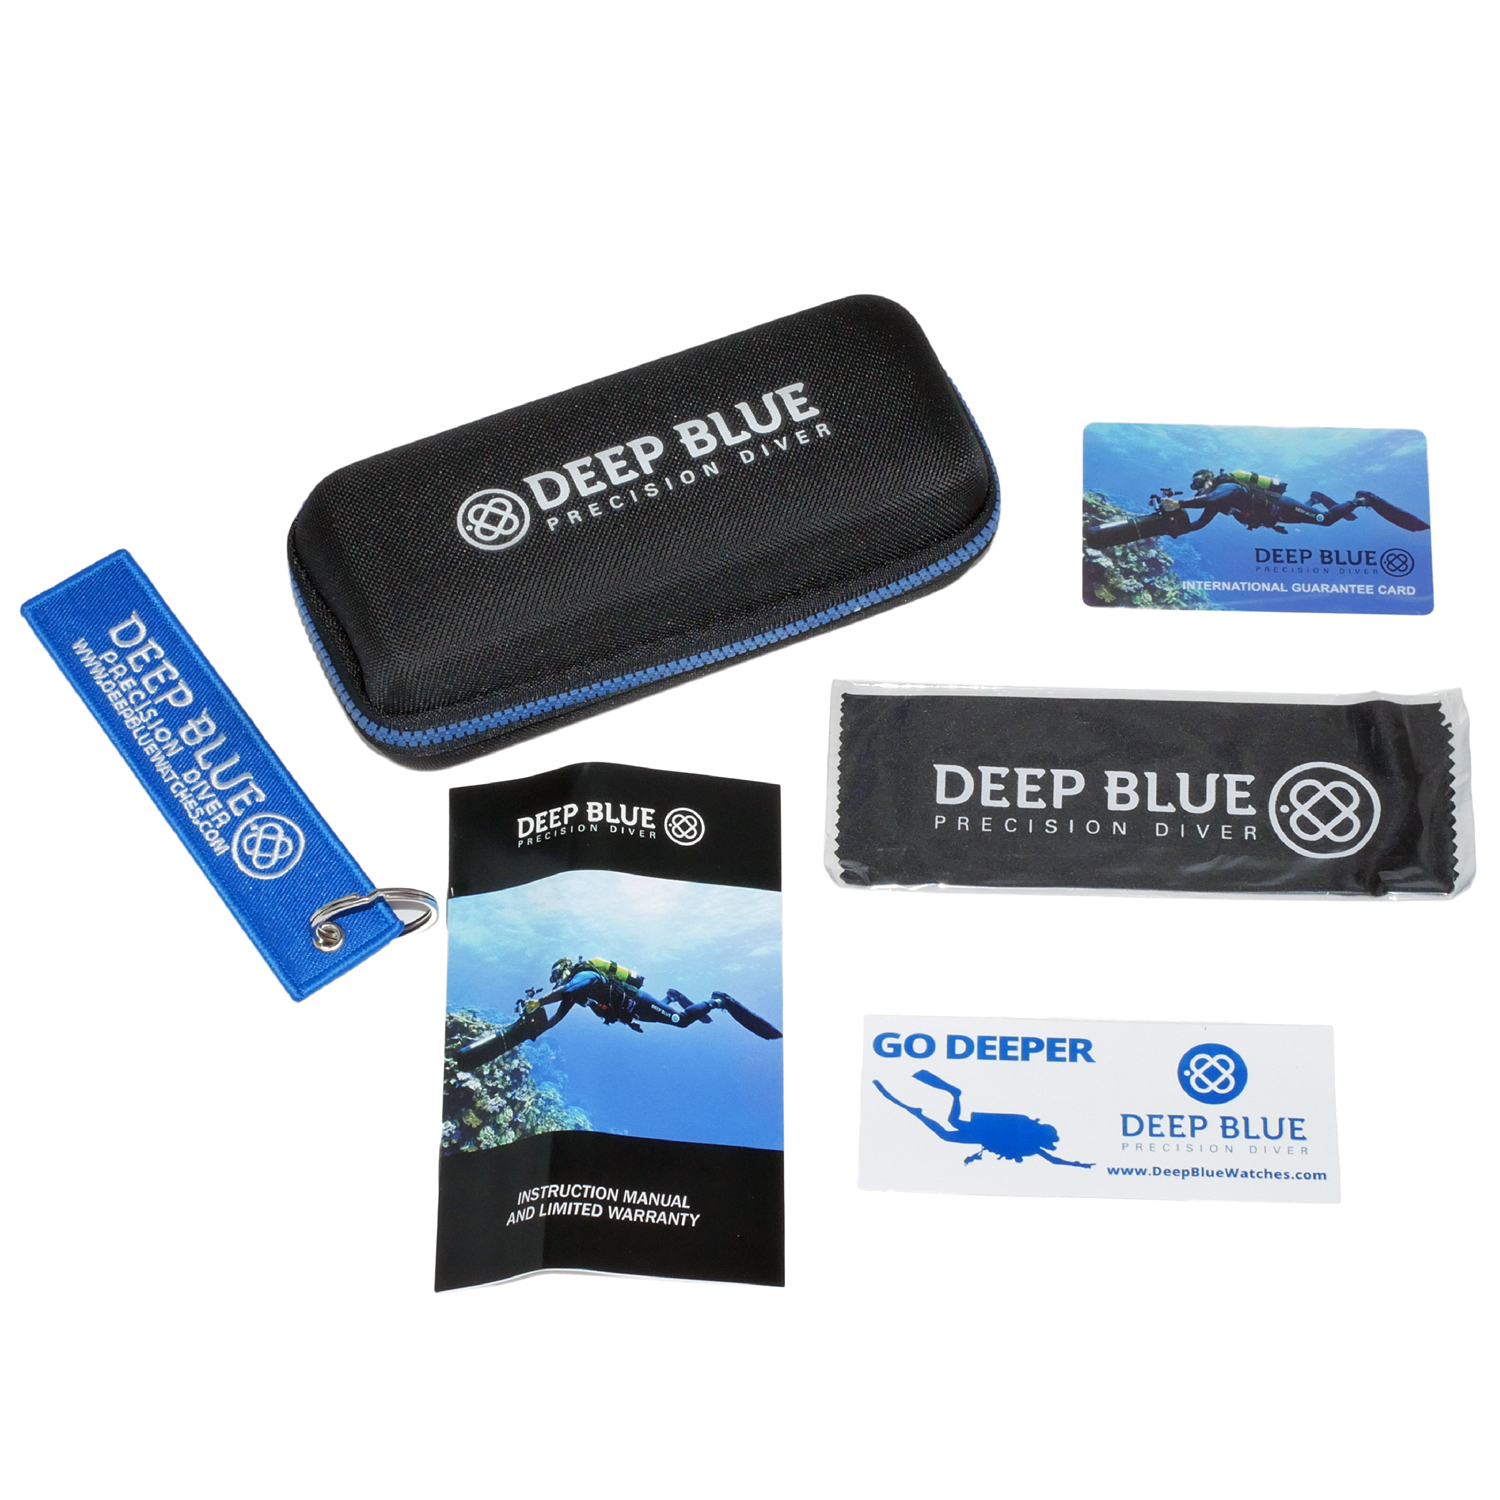 Deep Blue Ocean Diver 500 Automatic Men's Diver Watch Black-Blue Bezel / Black-Blue Dial